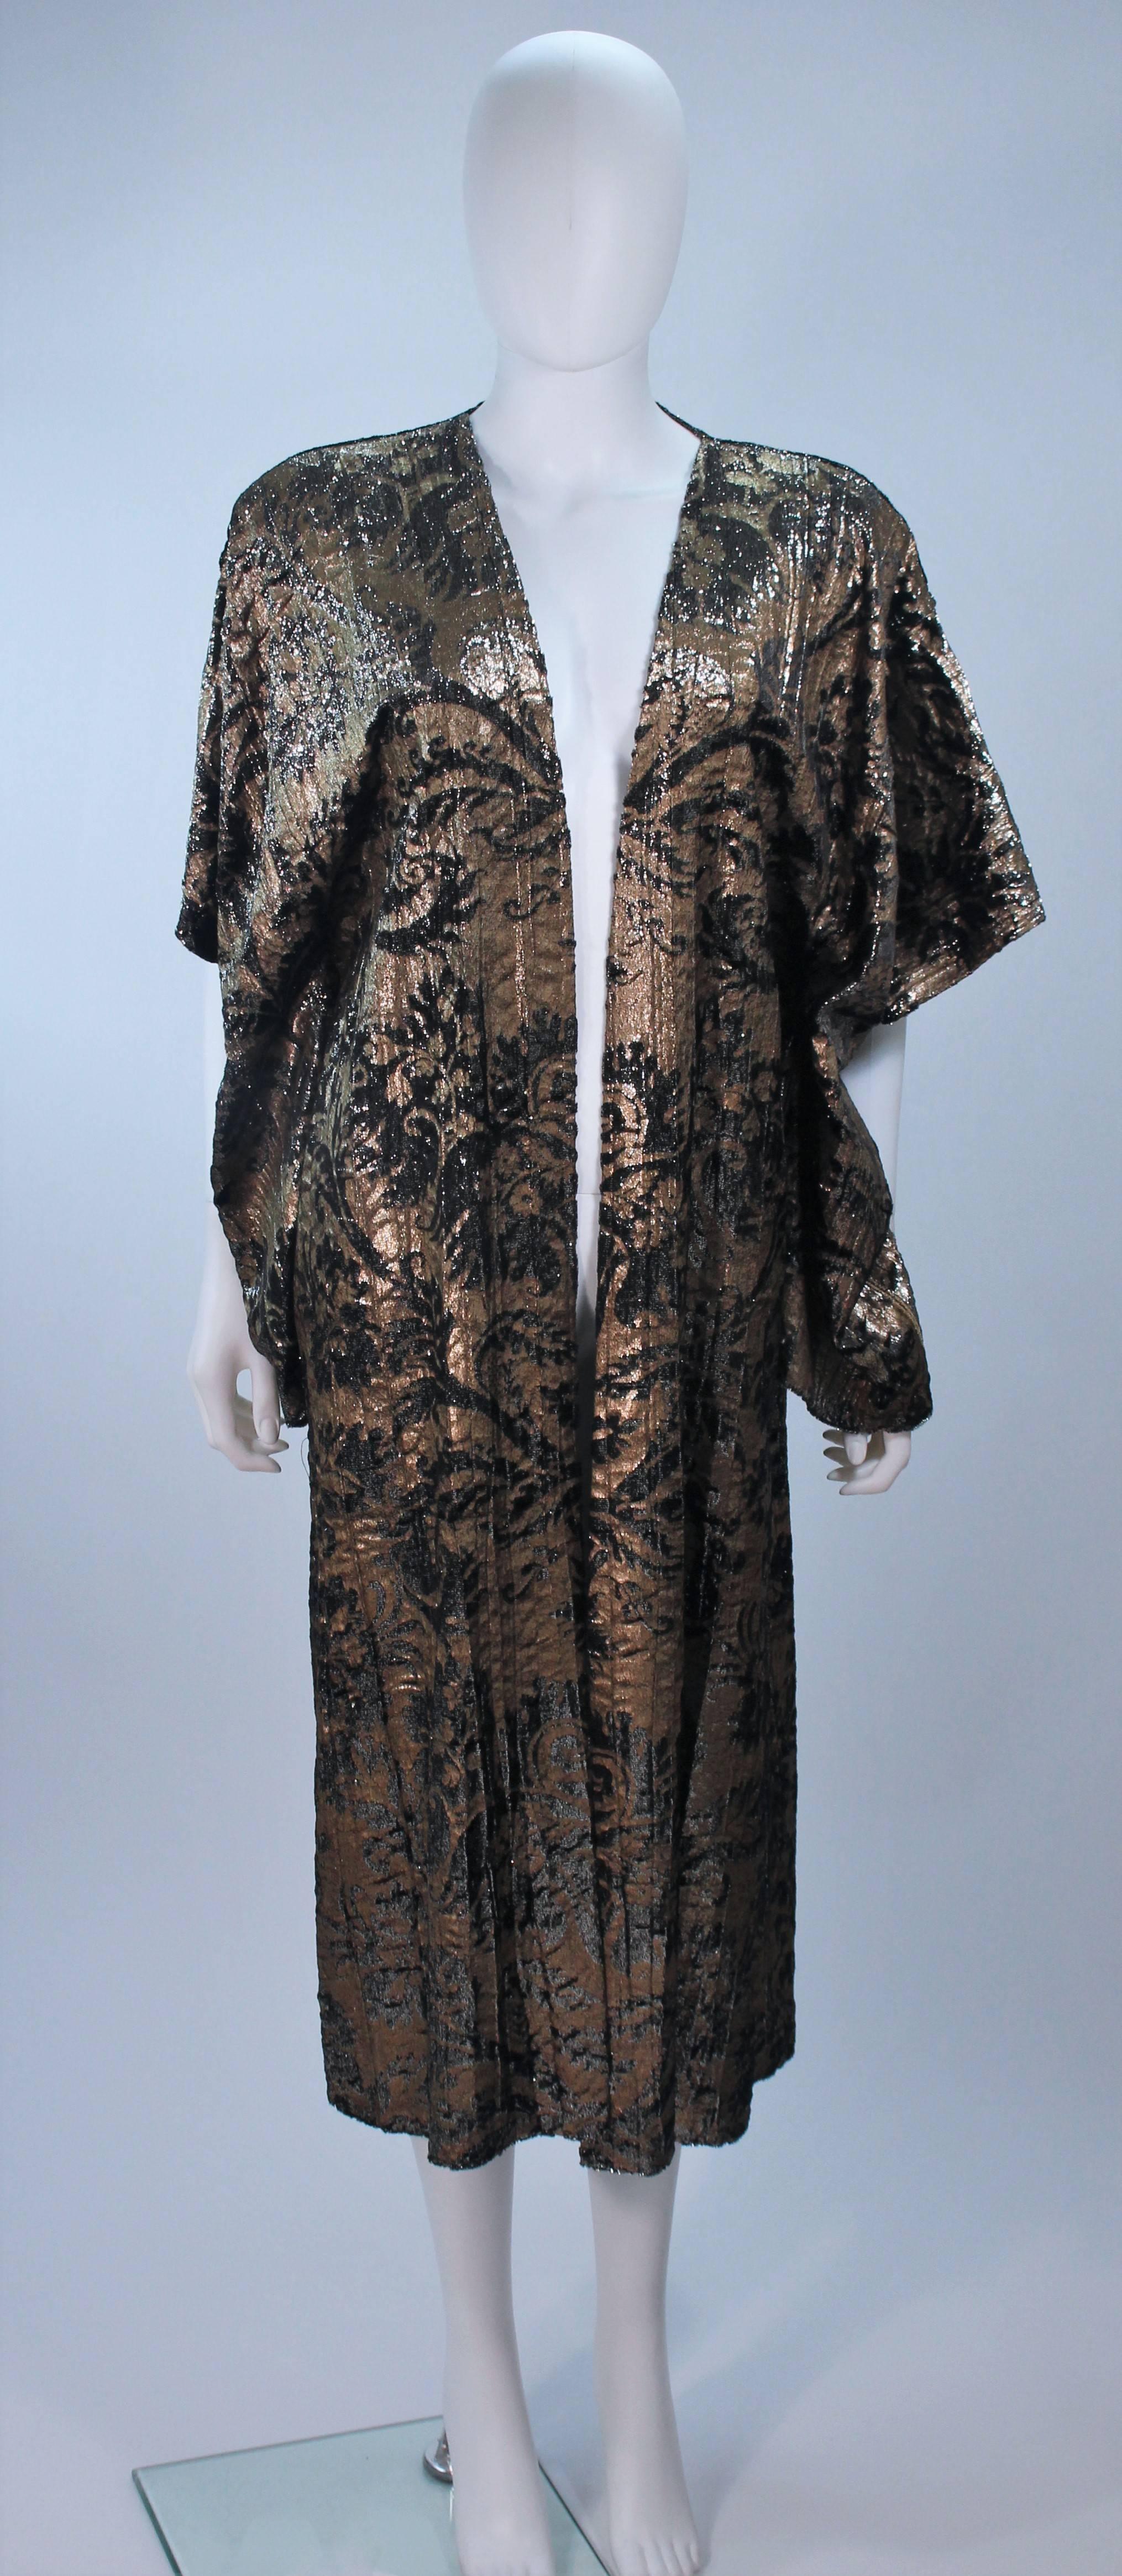  Dieser Mantel aus Mali besteht aus einer gefärbten Metallic-Samt-Seide. Mit Kimono-Ärmeln mit Quasten und offenem Schnitt. In tollem Vintage-Zustand. Hergestellt in Italien.

  **Bitte vergleichen Sie die Maße für persönliche Genauigkeit. Die